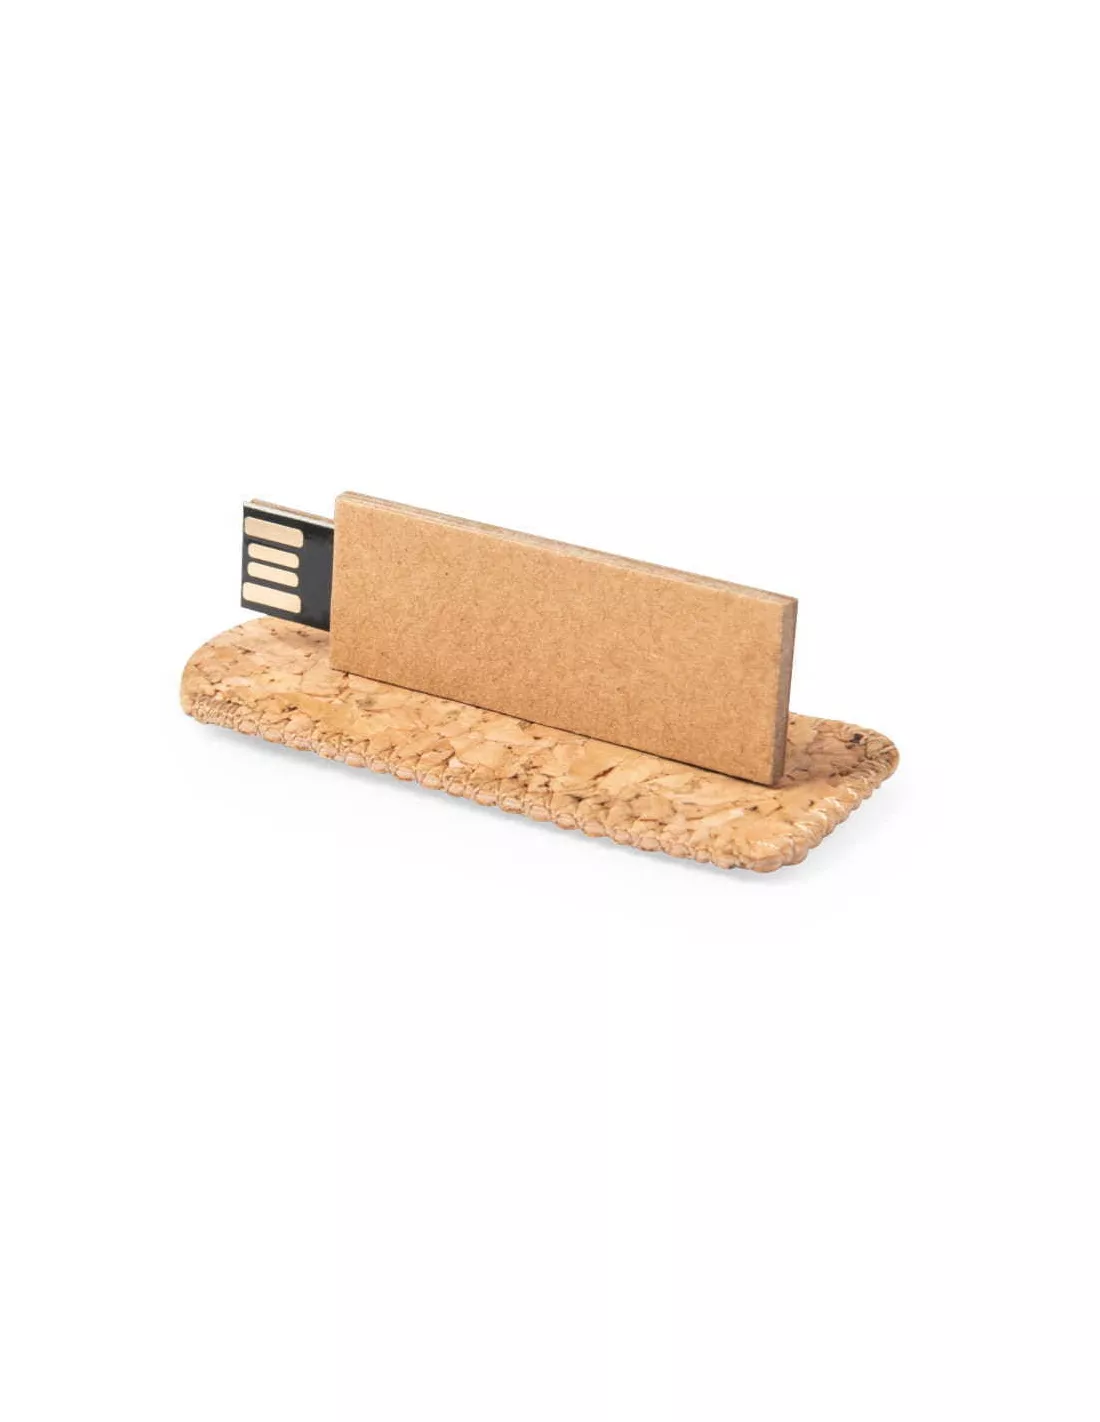 Pendrive eco de cartón reciclado y corcho Nosux 16GB (medio ambiente)